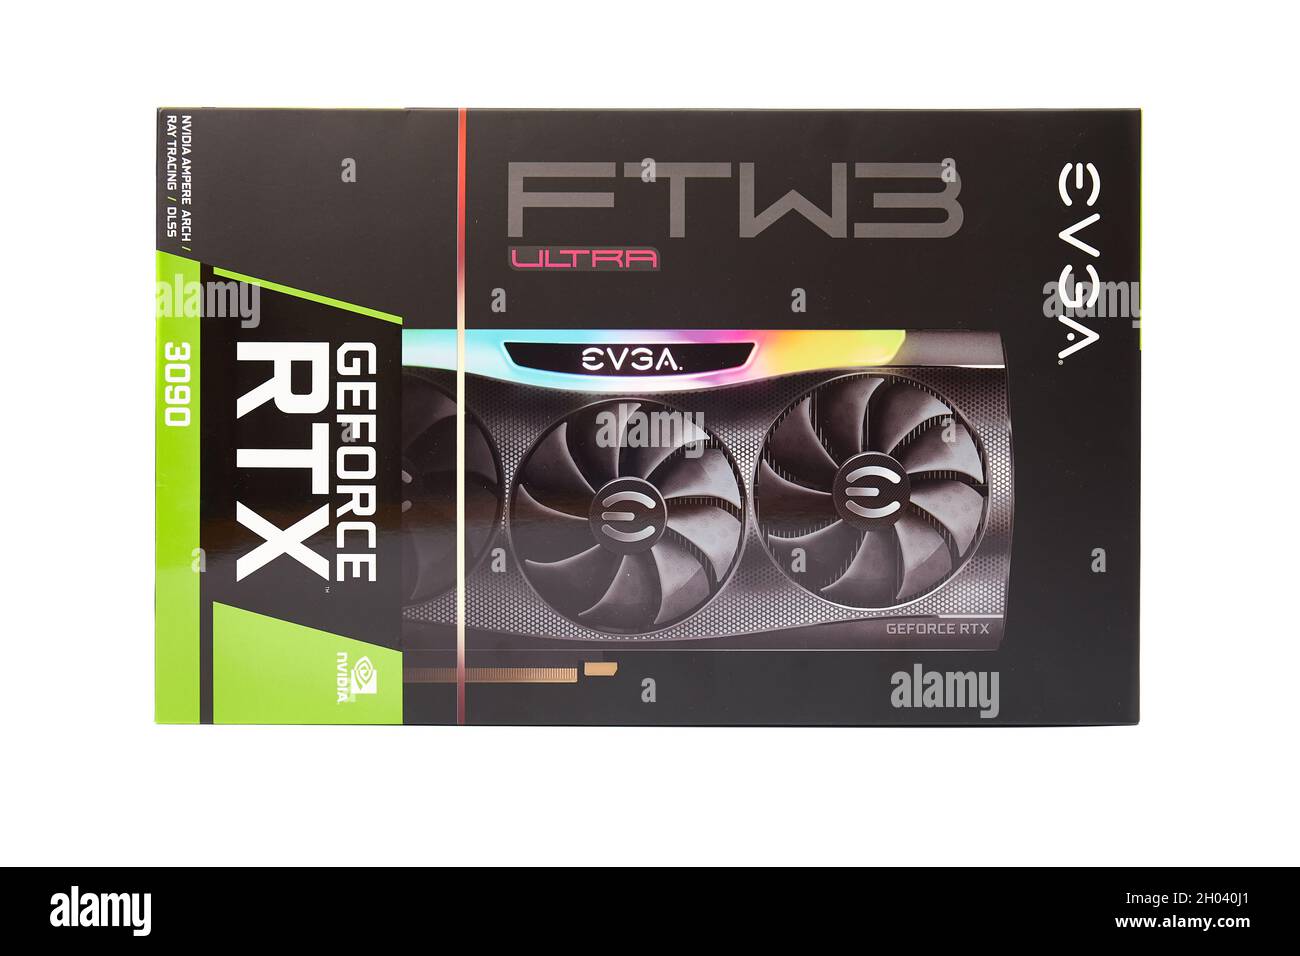 EVGA Geforce RTX 3090 Nvidia GPU box, isolated on white Stock Photo - Alamy